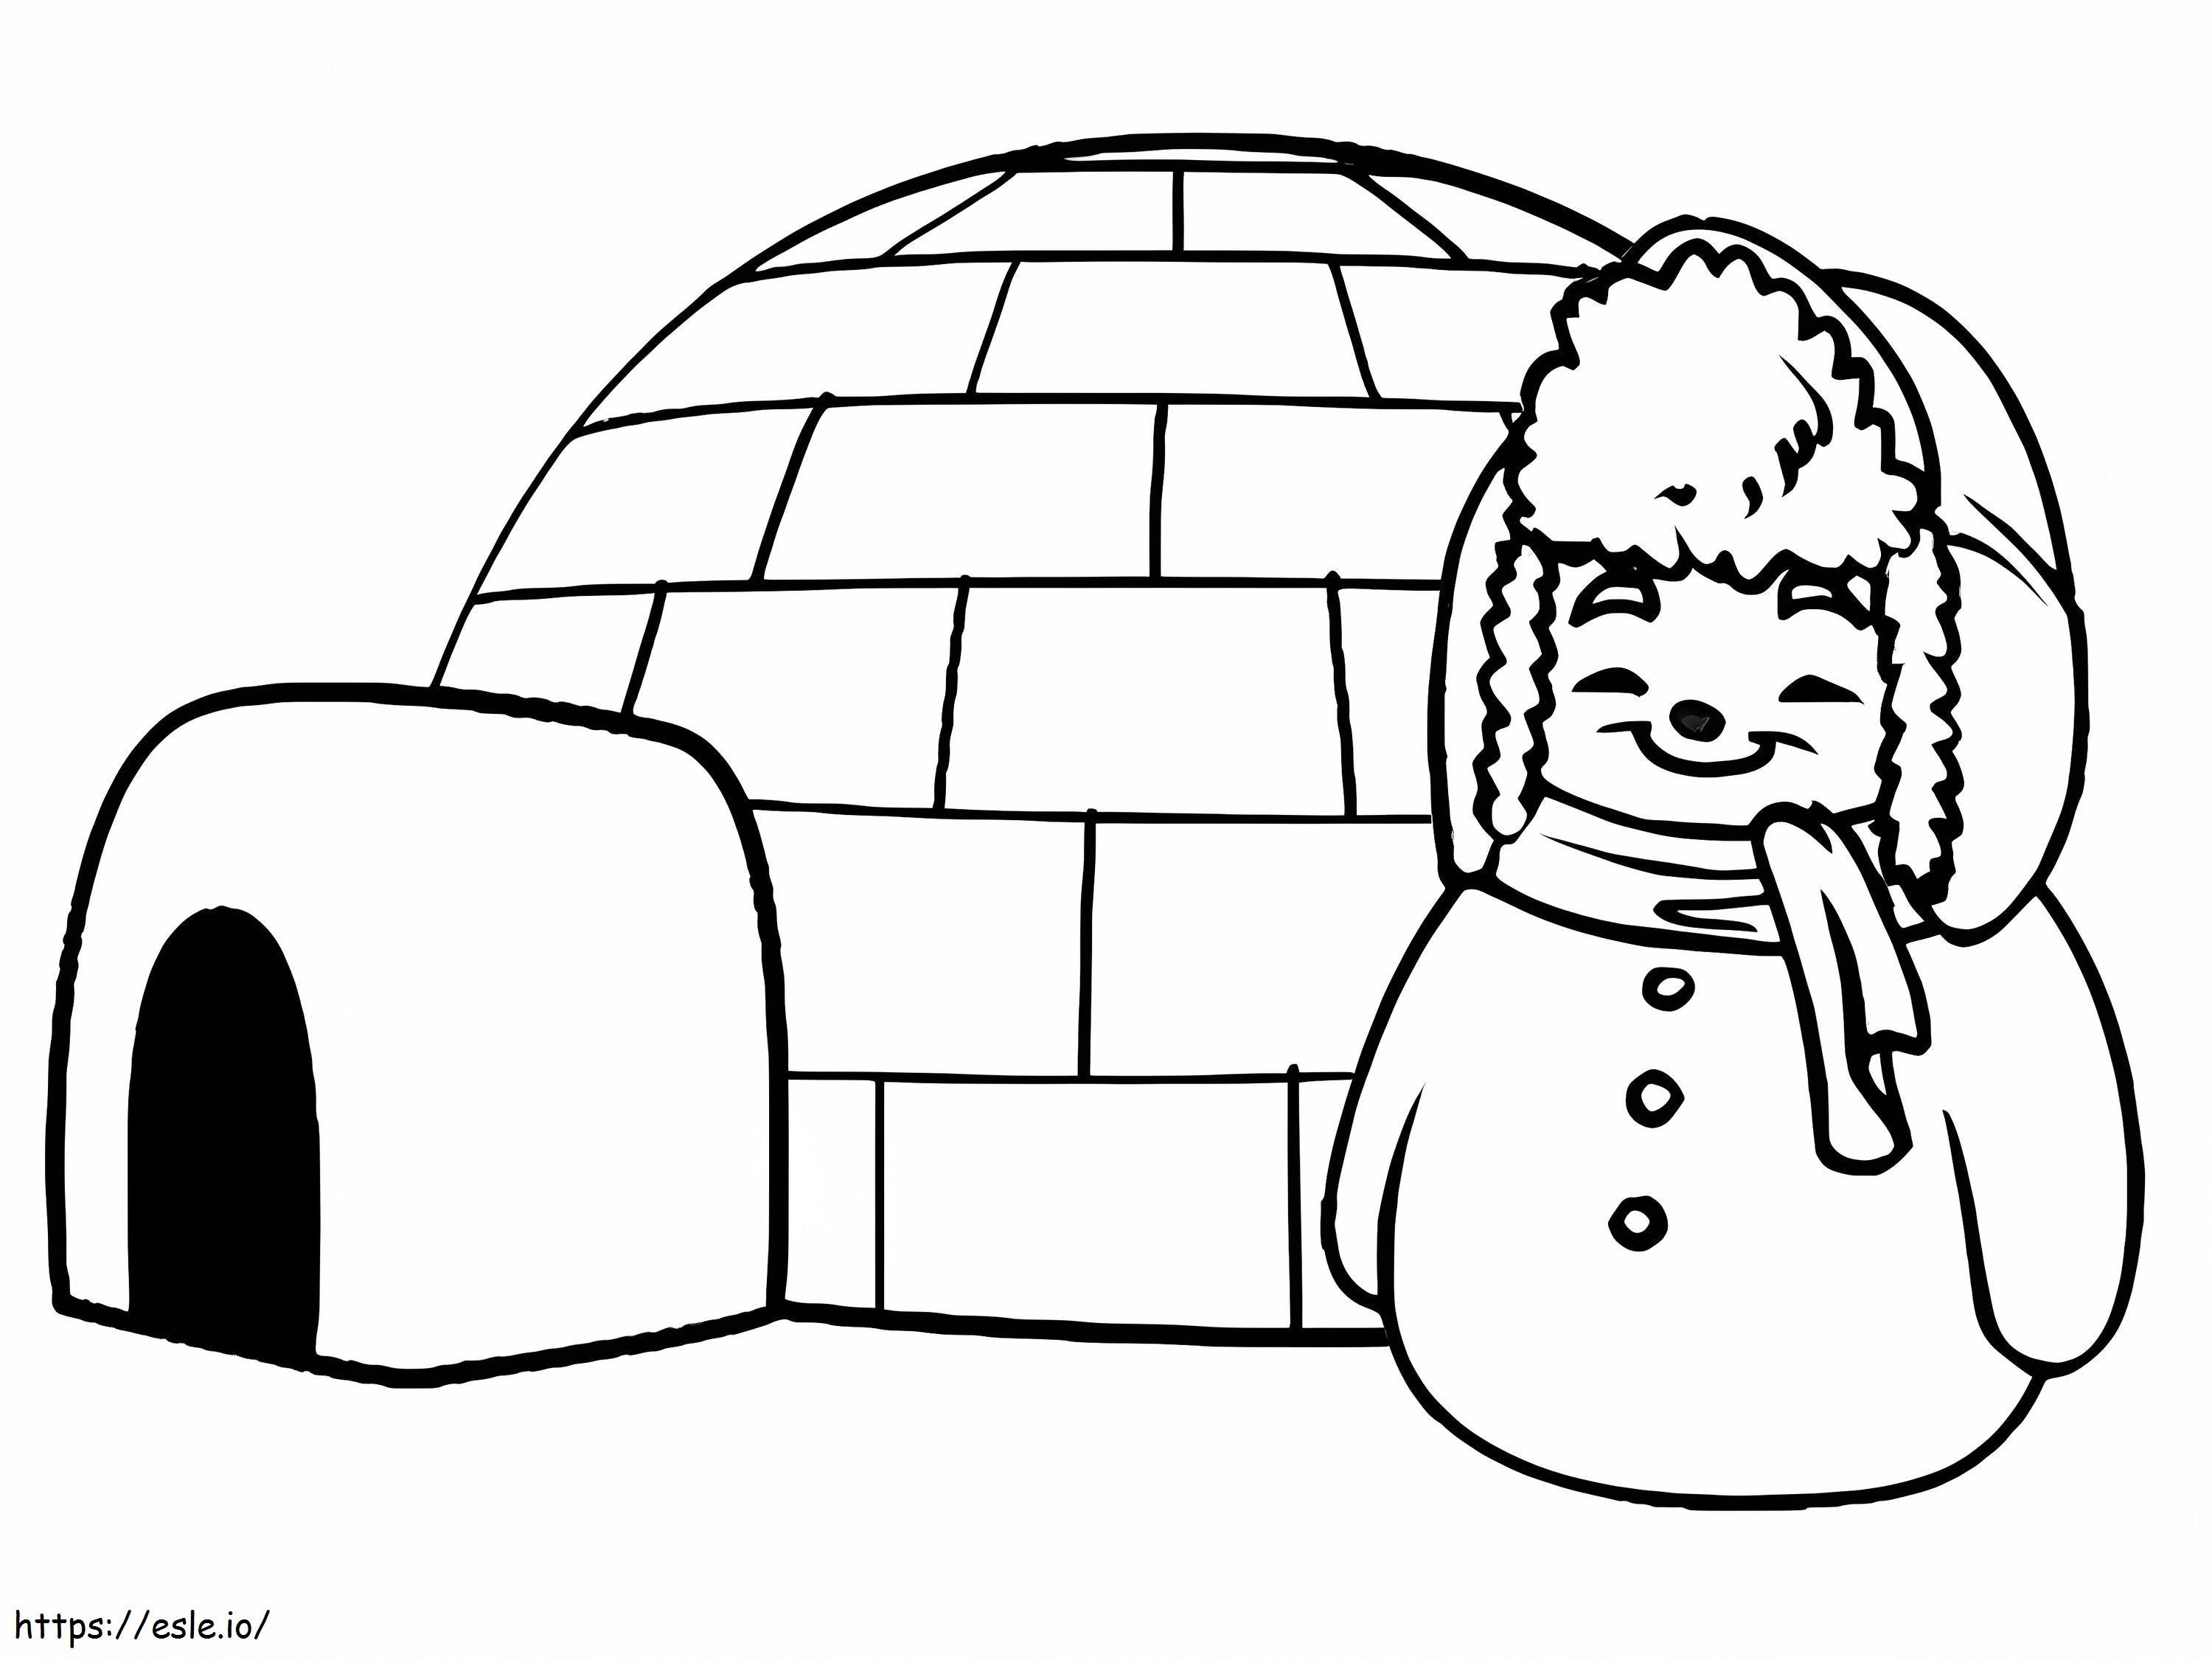 Iglu e boneco de neve para colorir